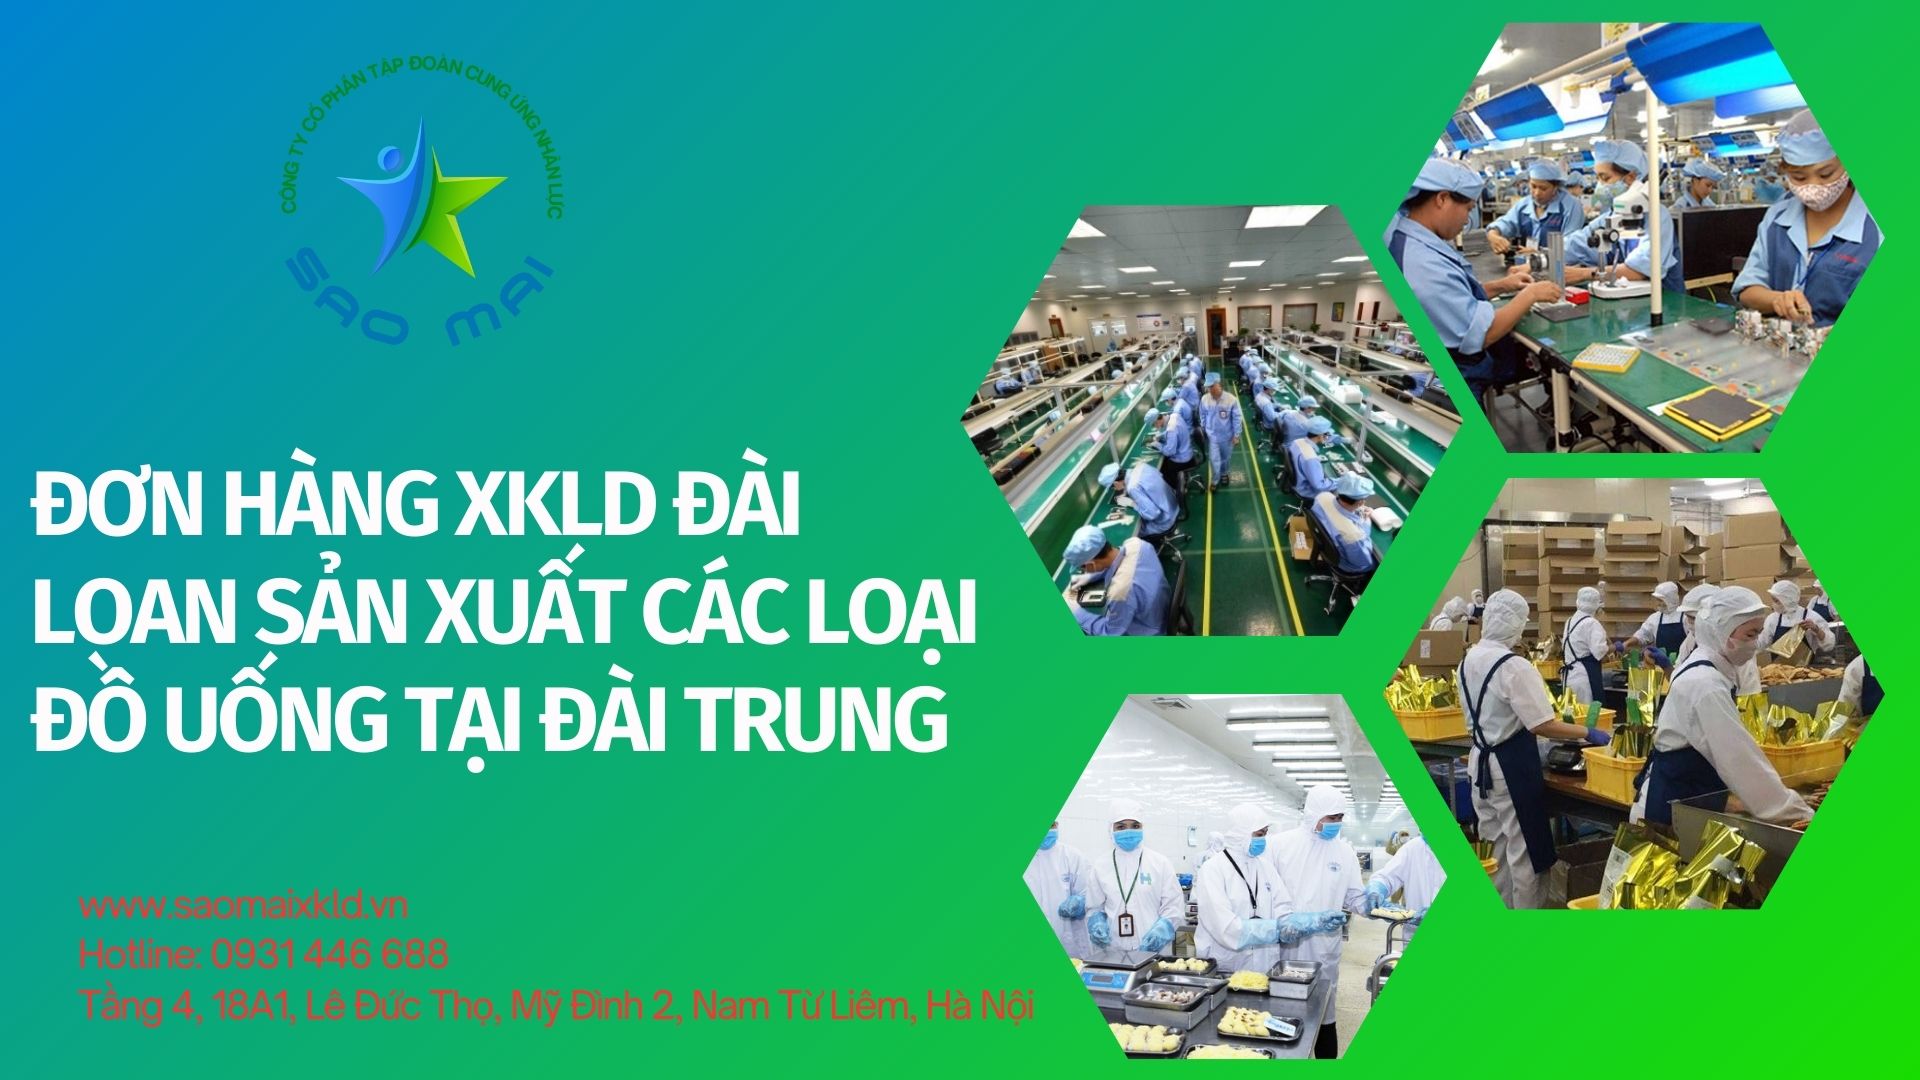 XKLD Đài Loan đơn hàng SẢN XUẤT CÁC LOẠI ĐỒ UỐNG tuyển dụng 2 NAM làm việc tại ĐÀI TRUNG